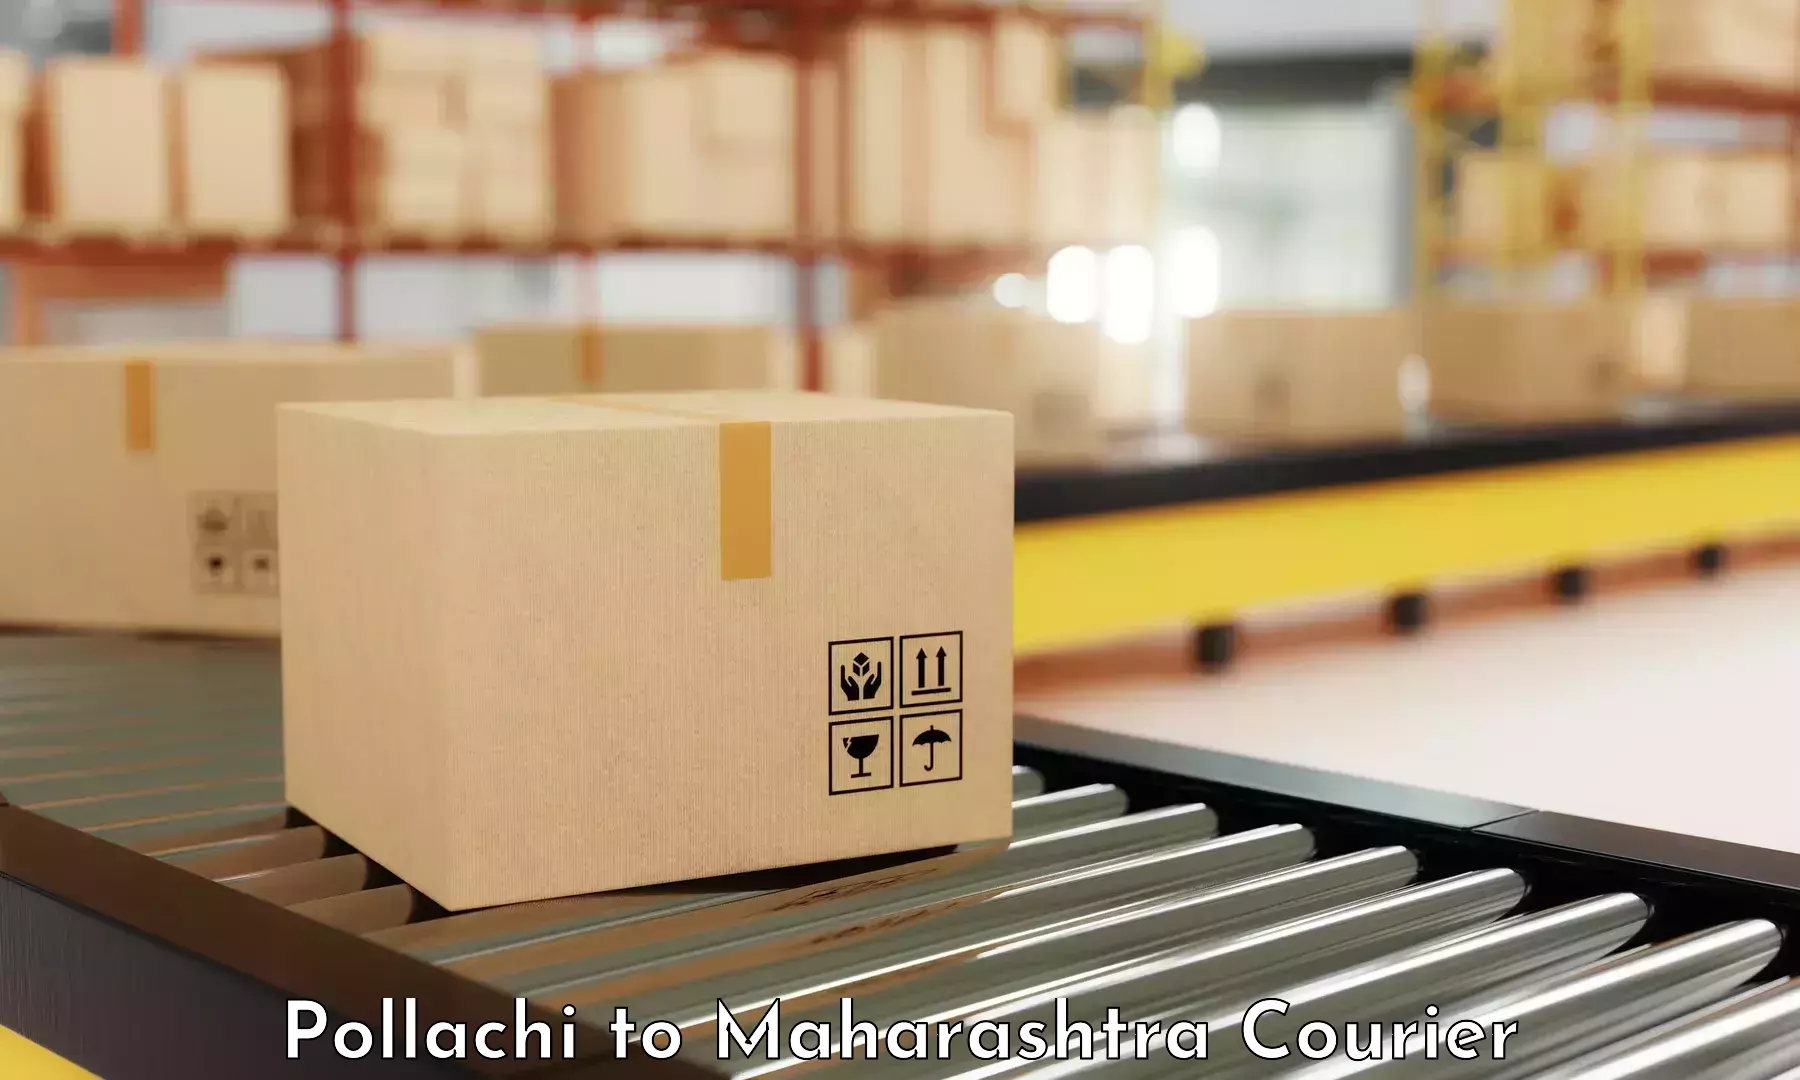 Premium courier solutions Pollachi to Waranga Phata